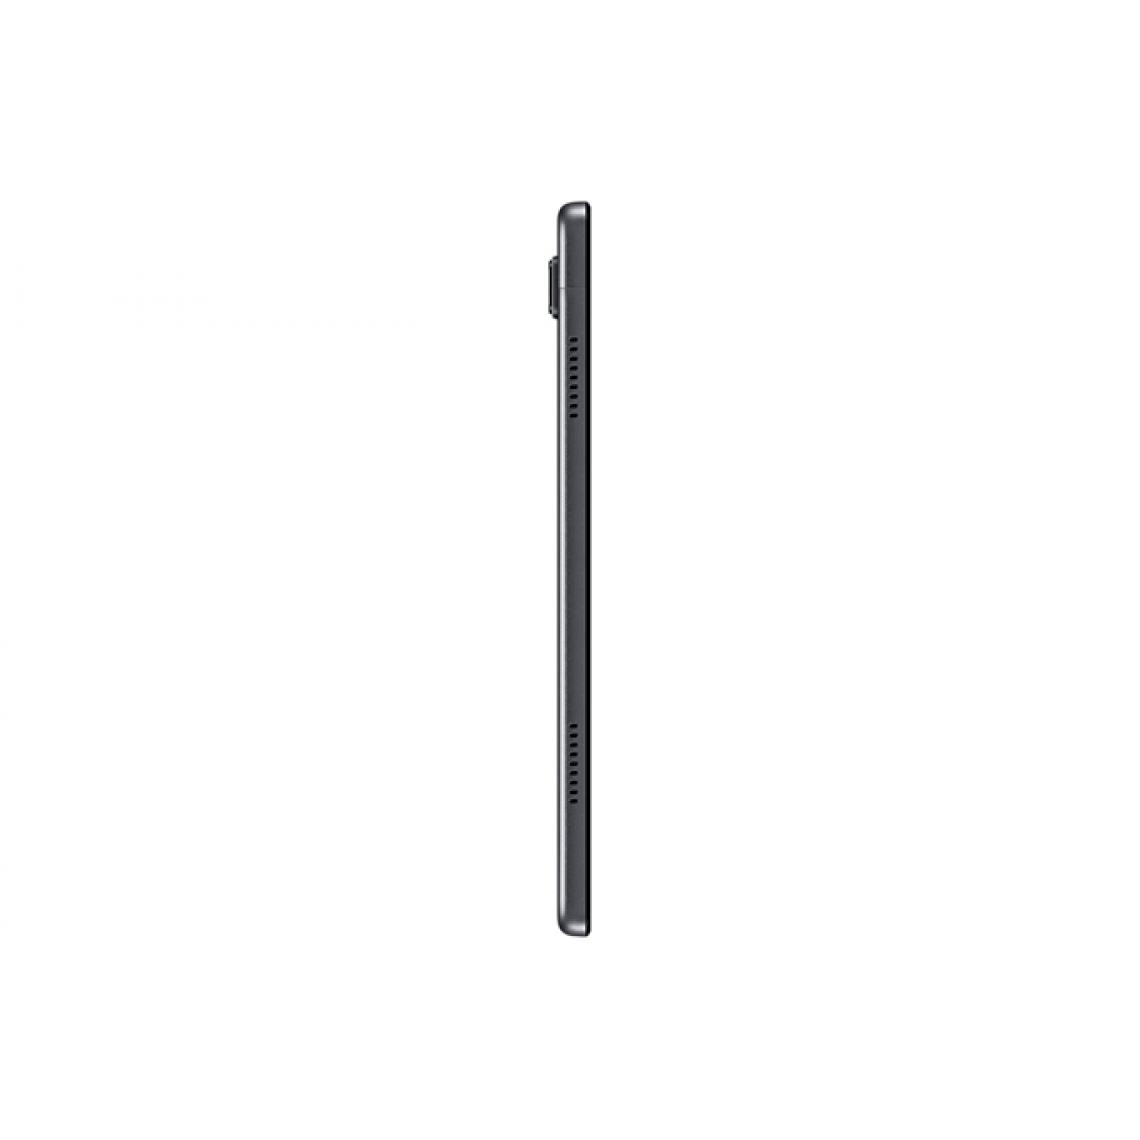 Samsung - A7 LTE 10.4 32GB dark grey EU - Tablette Windows